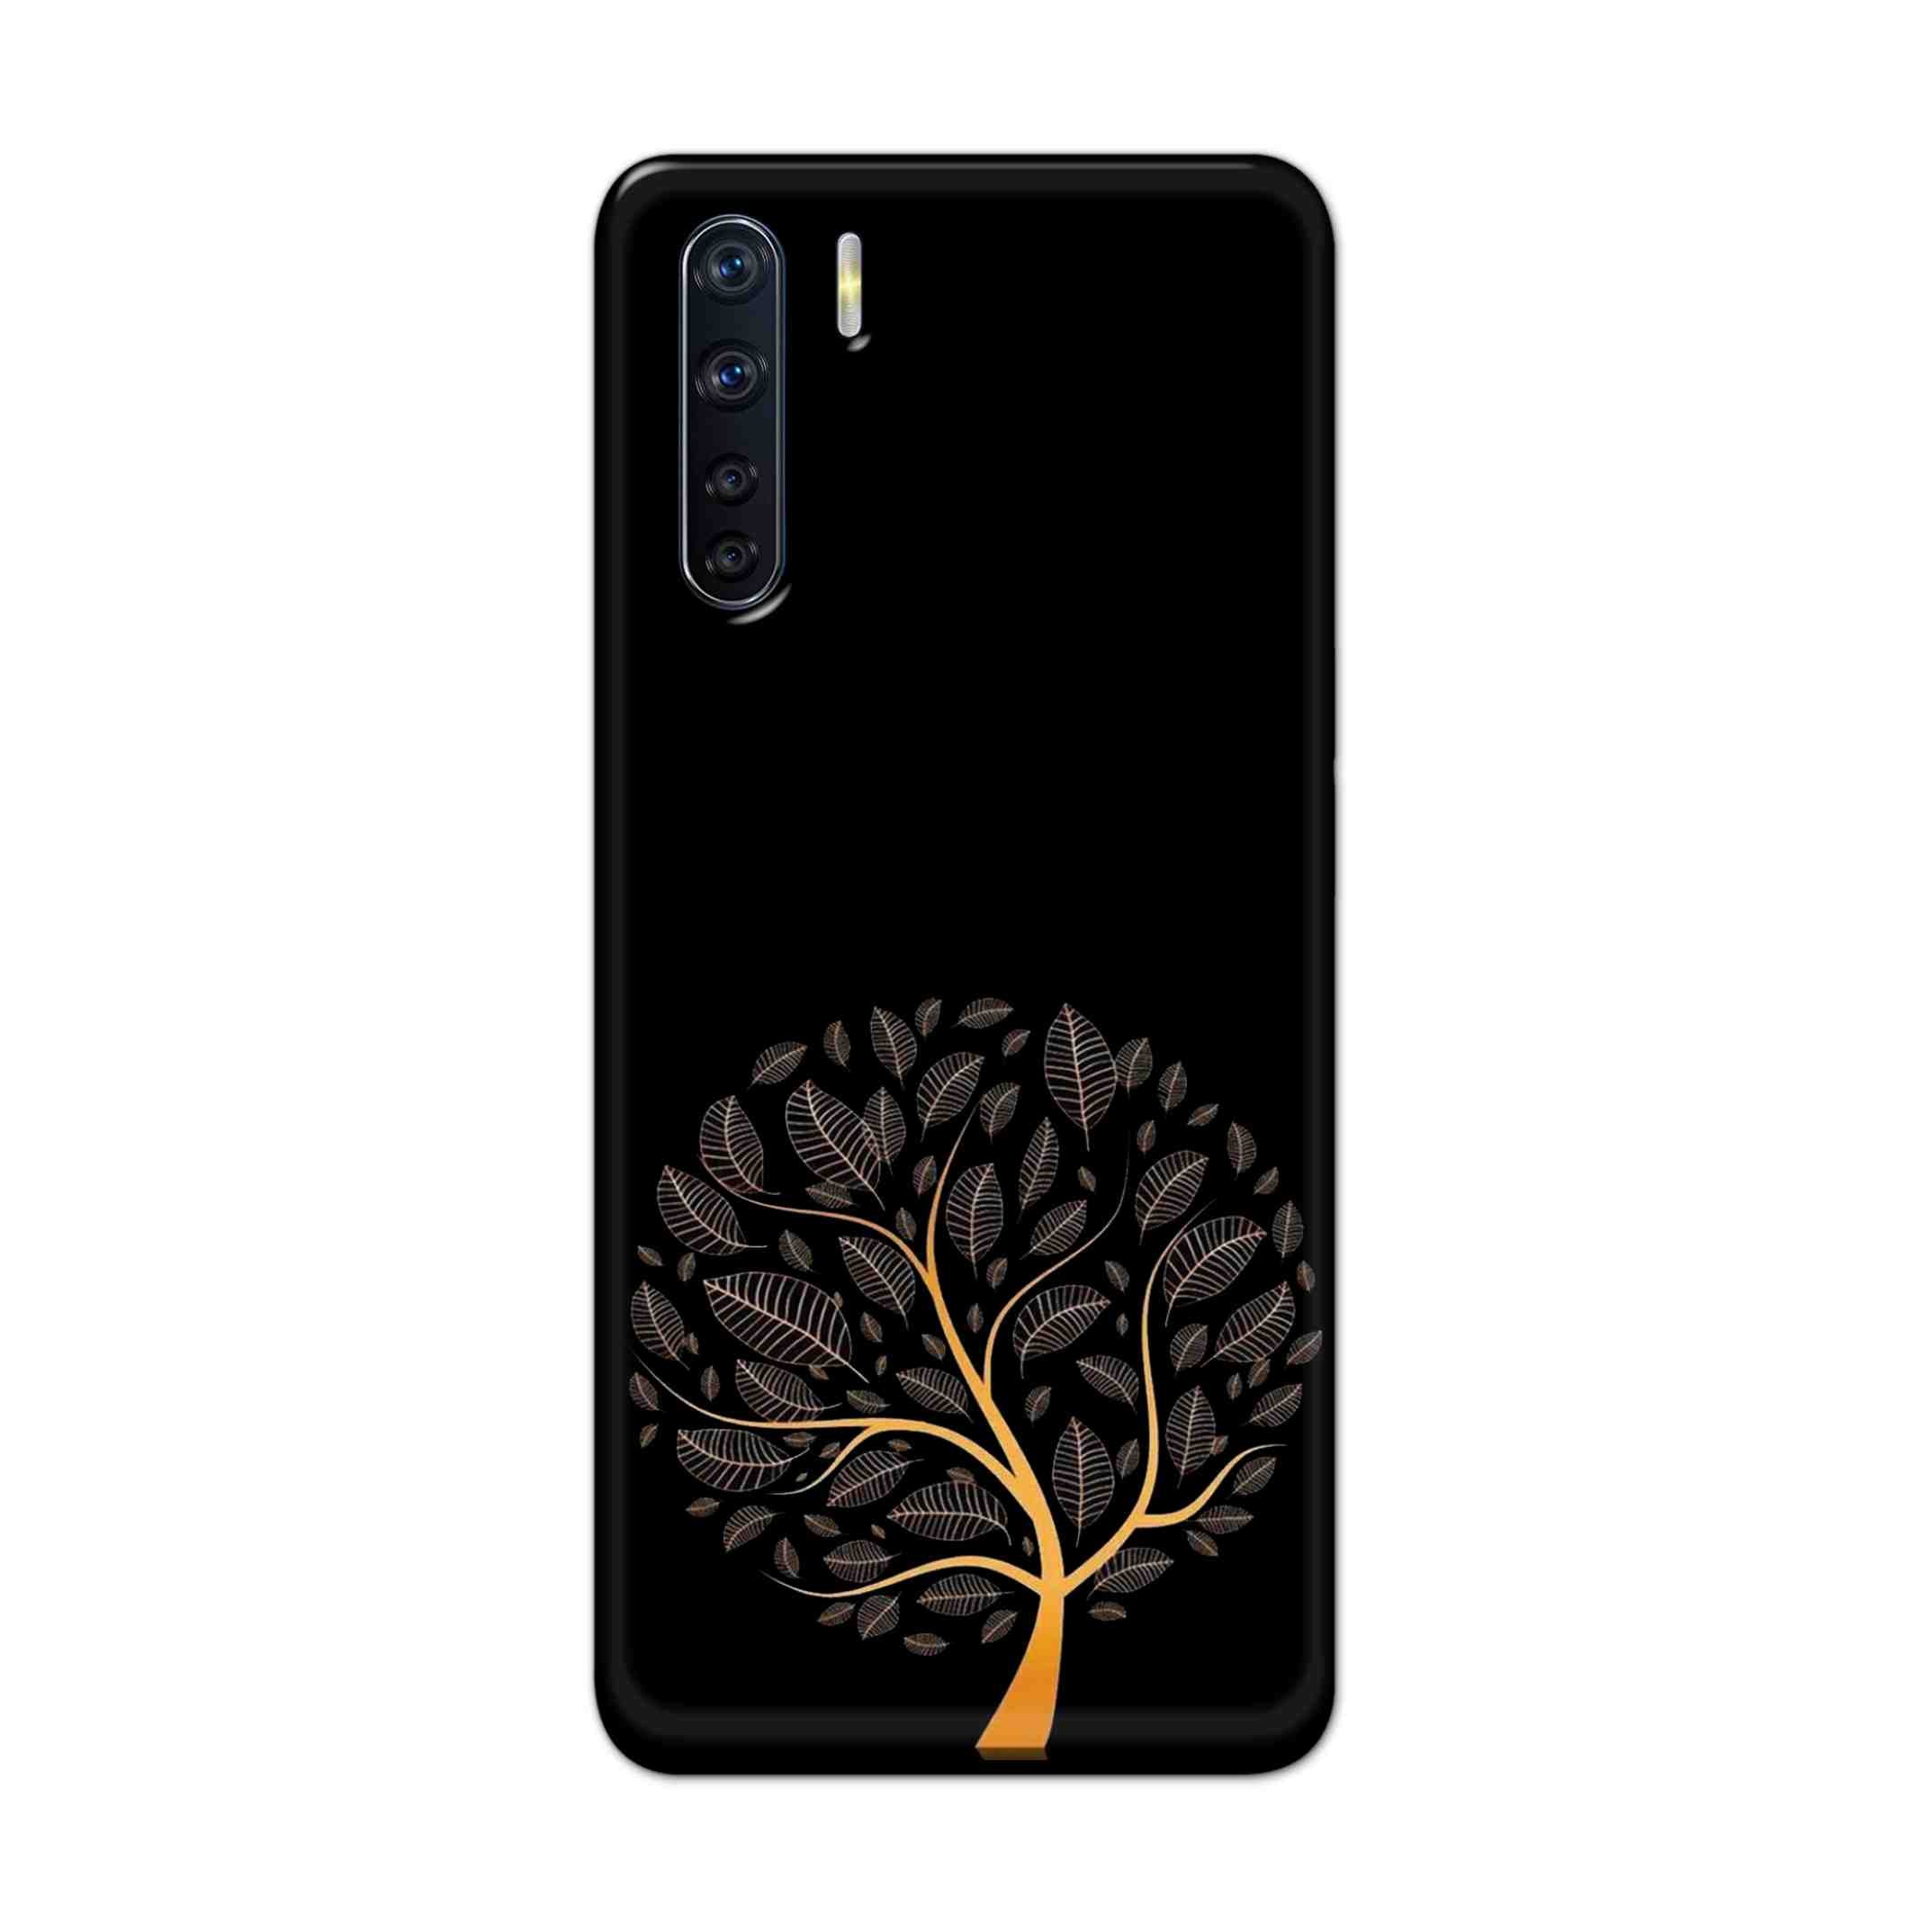 Buy Golden Tree Hard Back Mobile Phone Case Cover For OPPO F15 Online